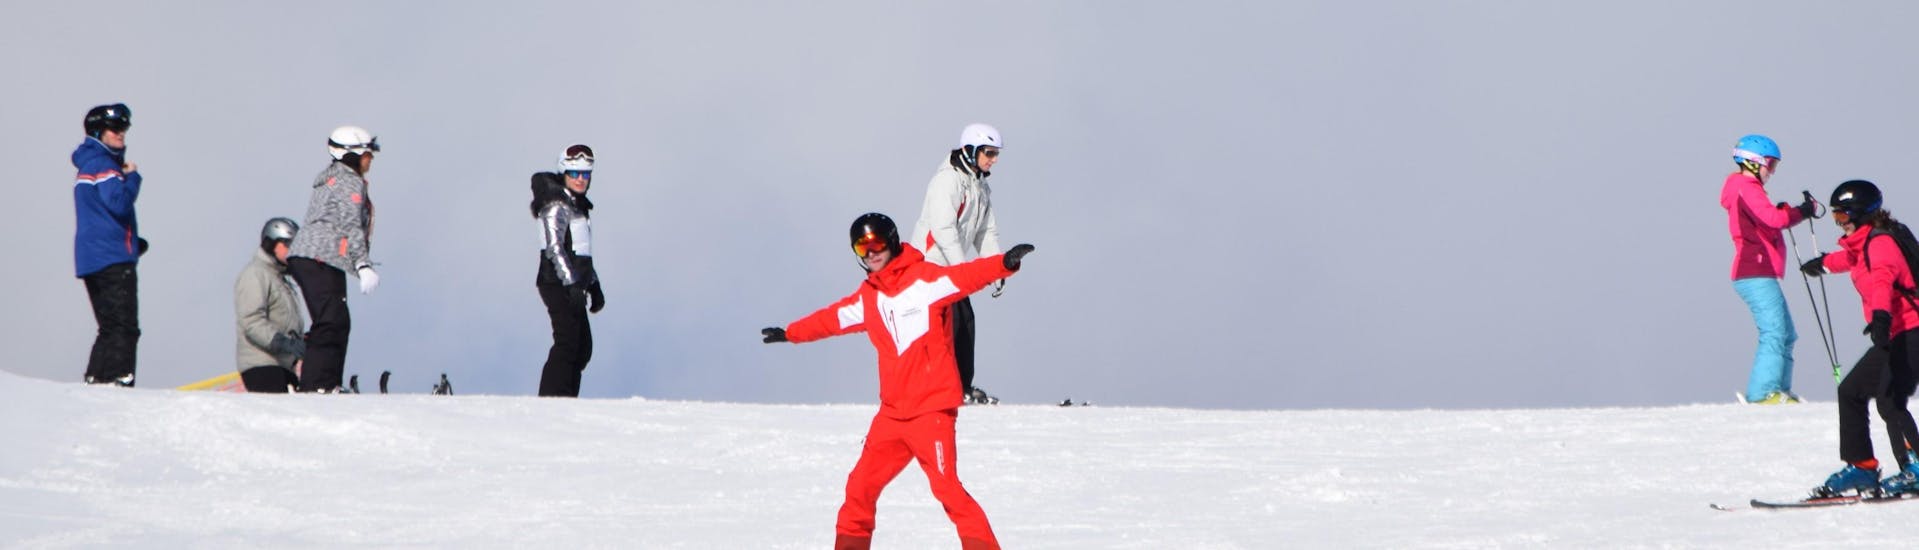 Lezioni di sci per adulti a partire da 15 anni per avanzati con Ski School Snowsports Westendorf.